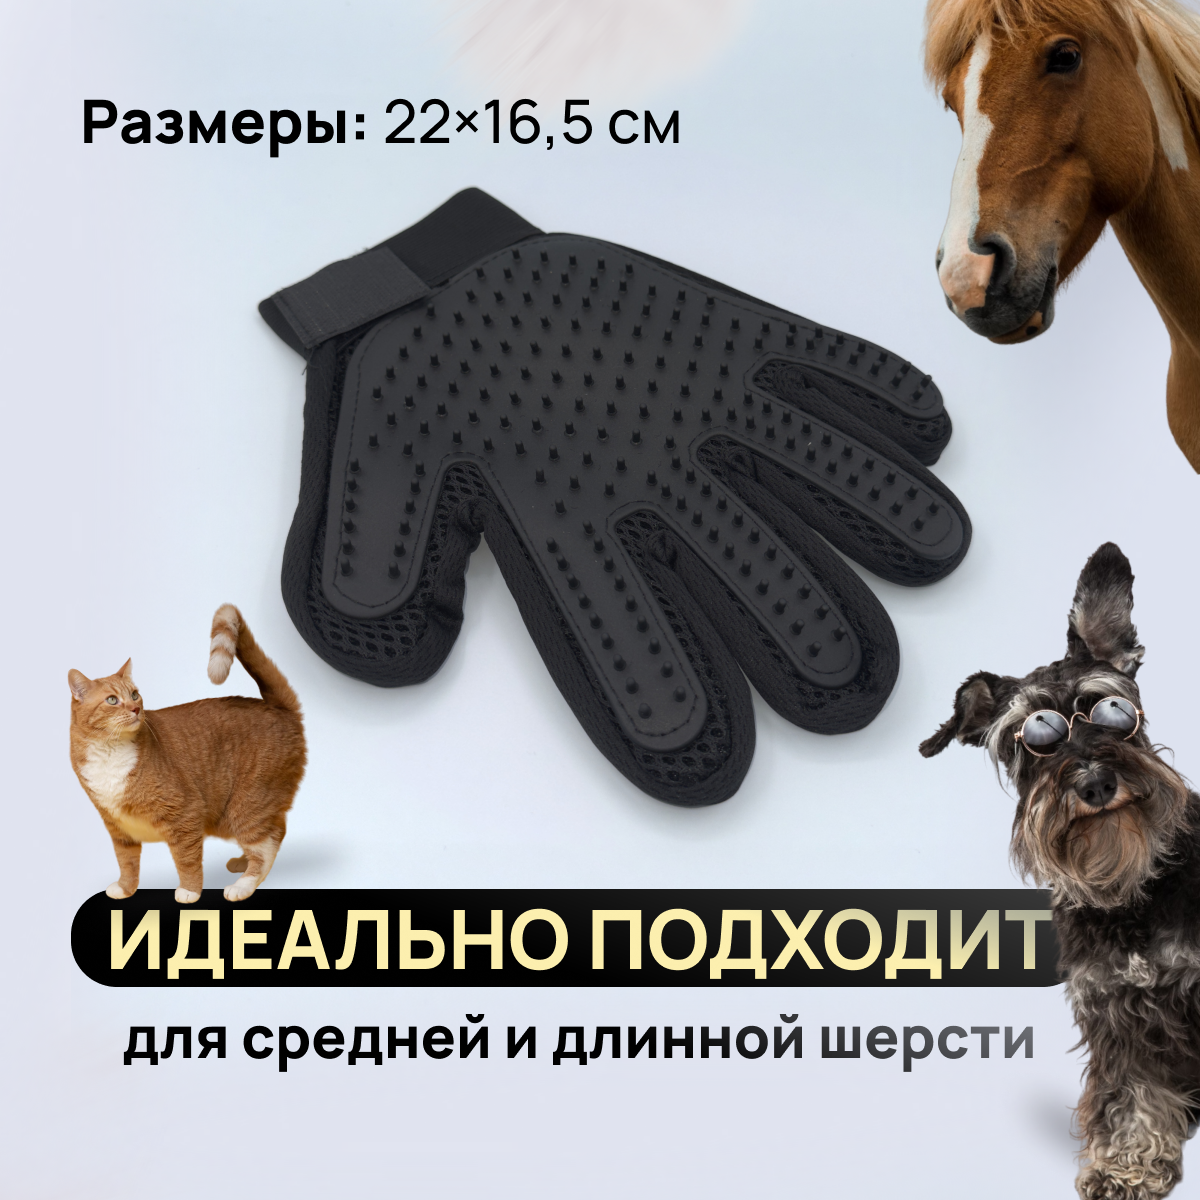 Перчатка расческа для вычесывания шерсти кошек и собак, цвет чёрный